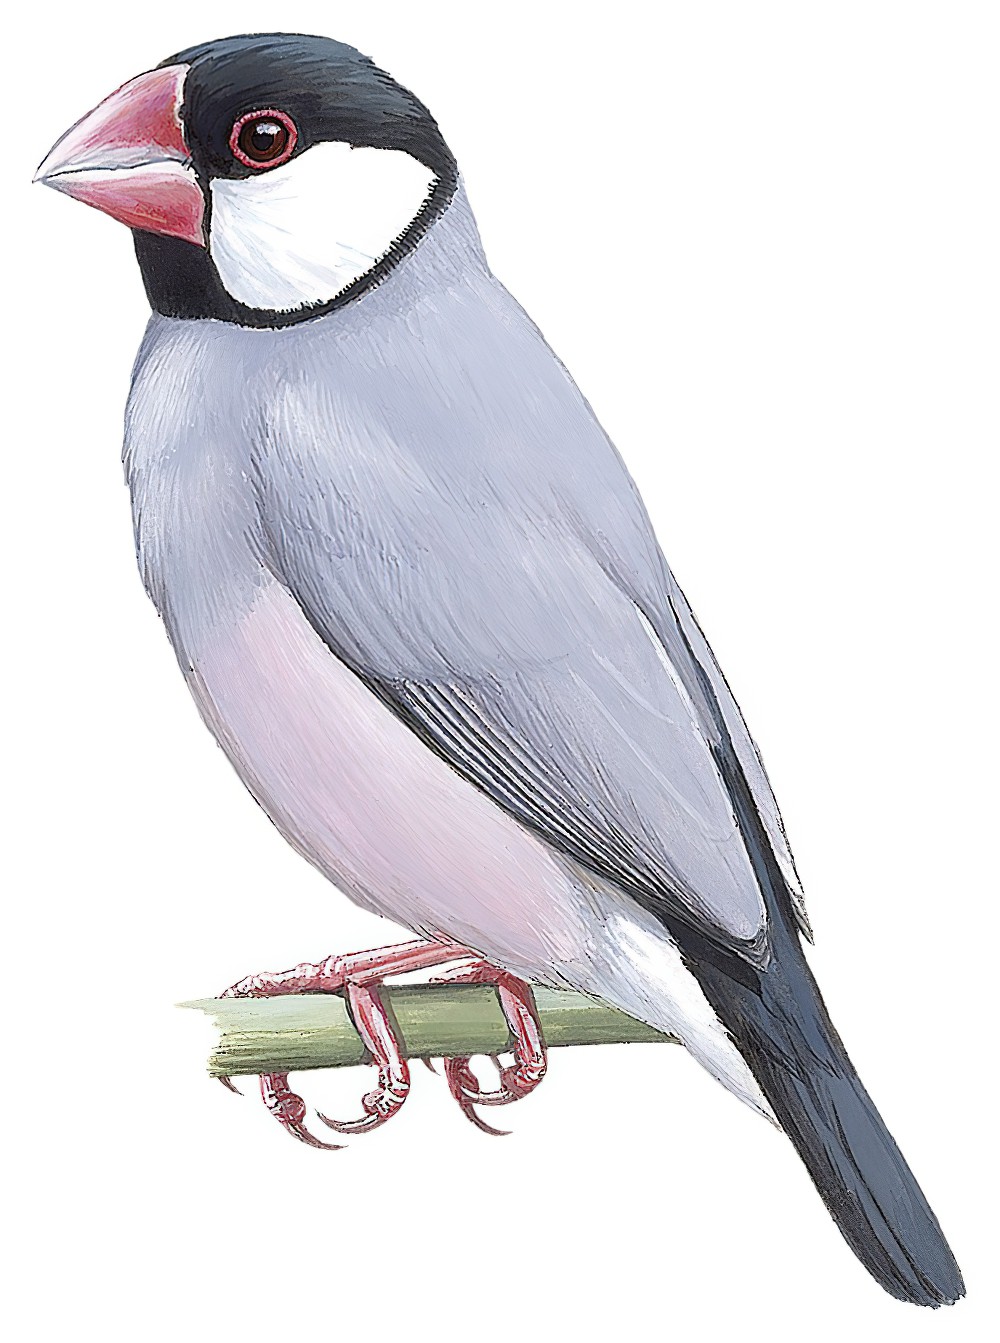 Java Sparrow / Lonchura oryzivora